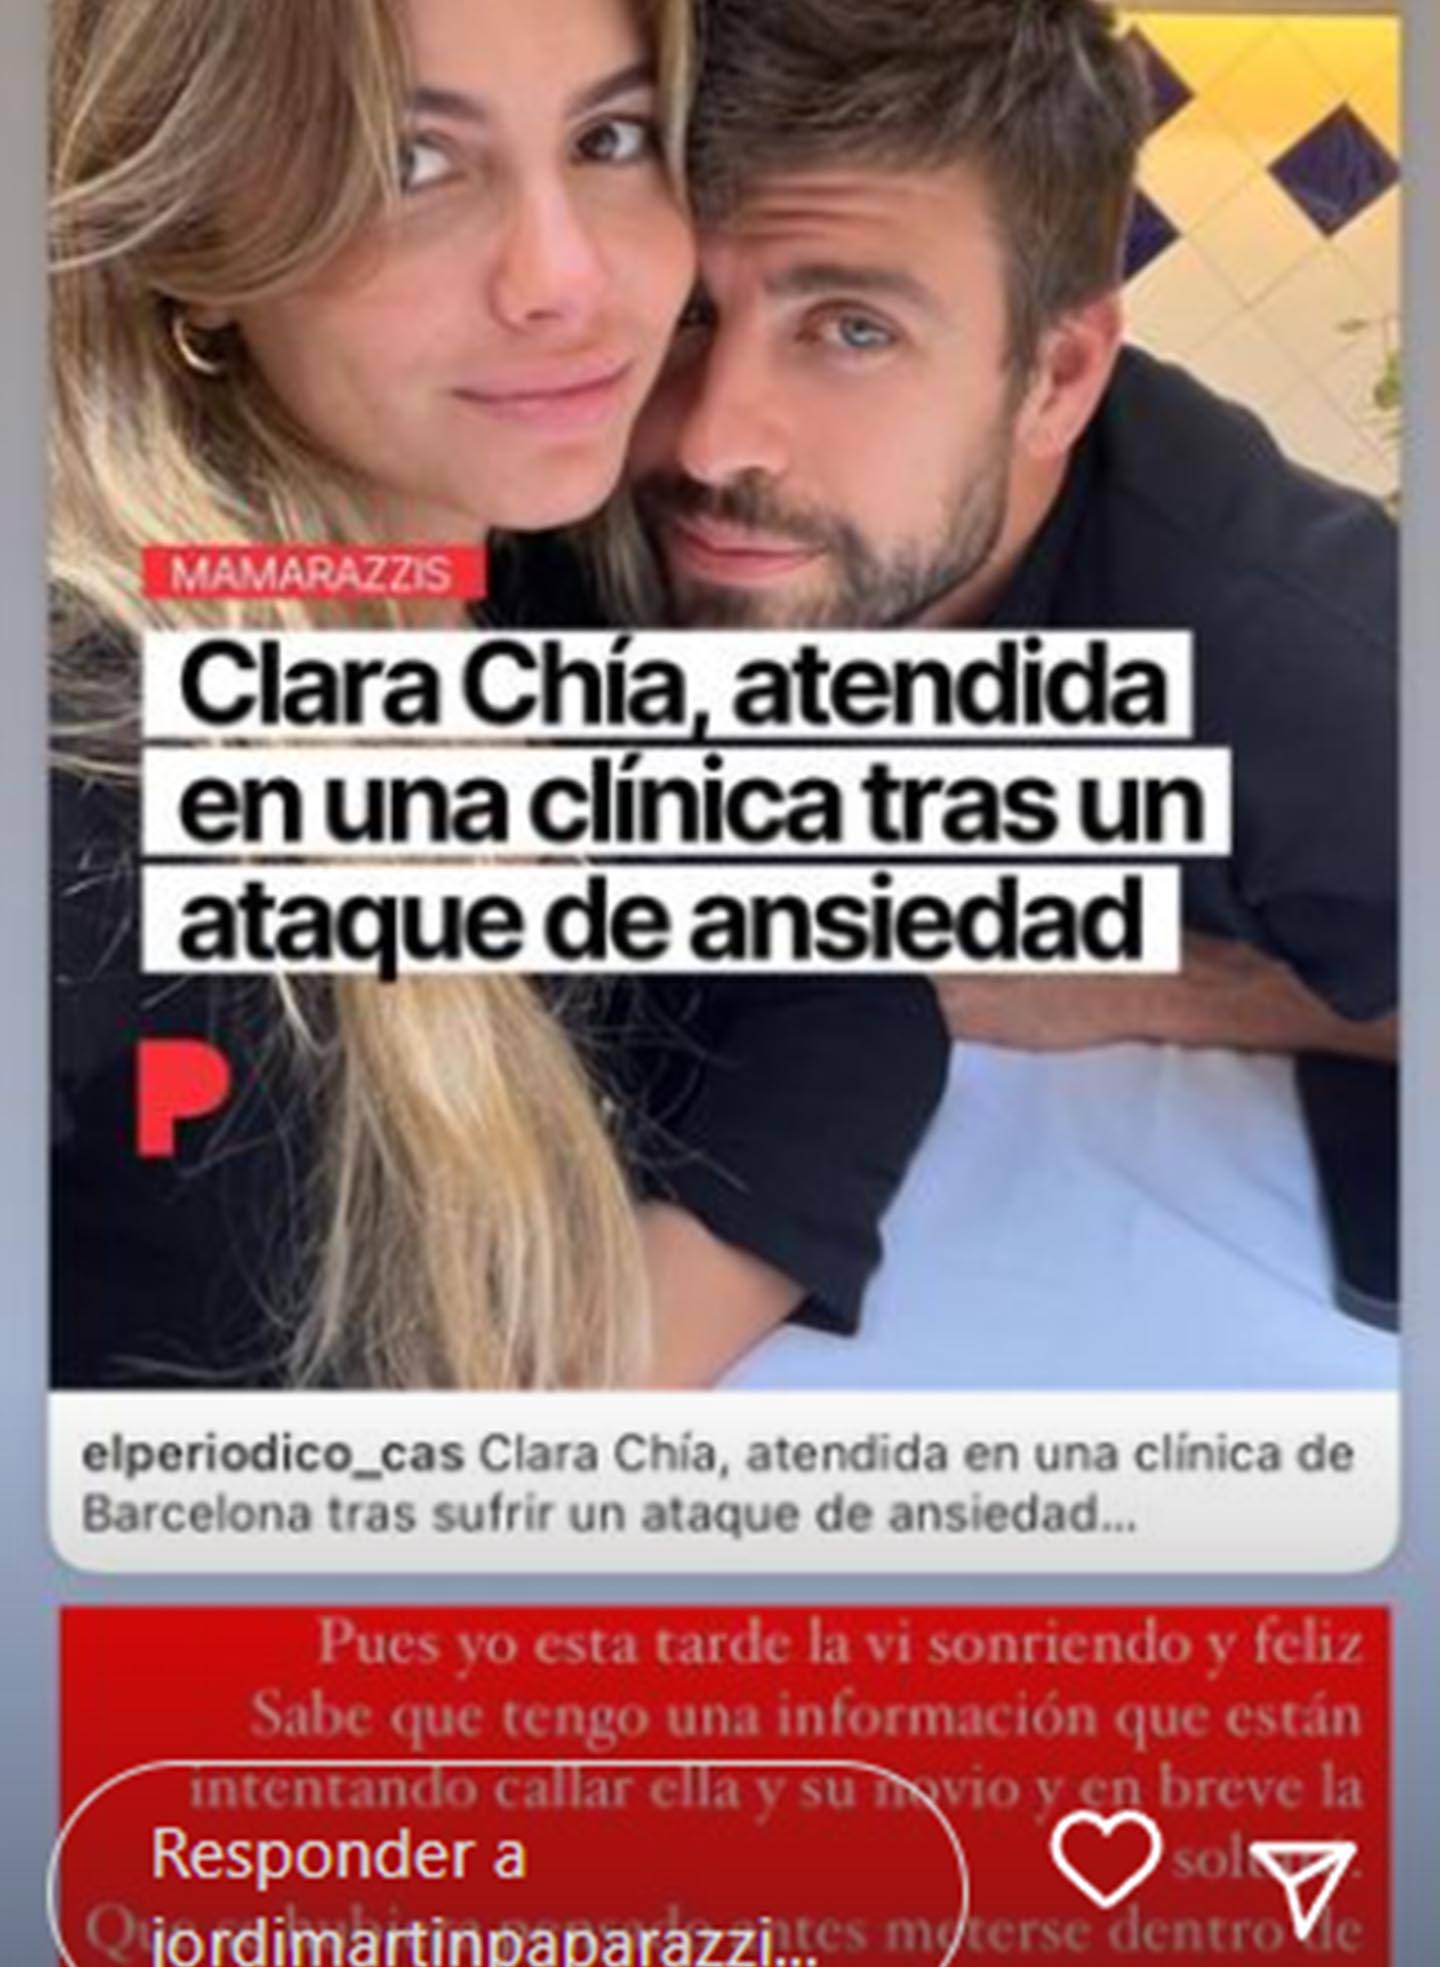 Paparazzi desmiente que novia de Piqué fuera internada en hospital por ataque de ansiedad